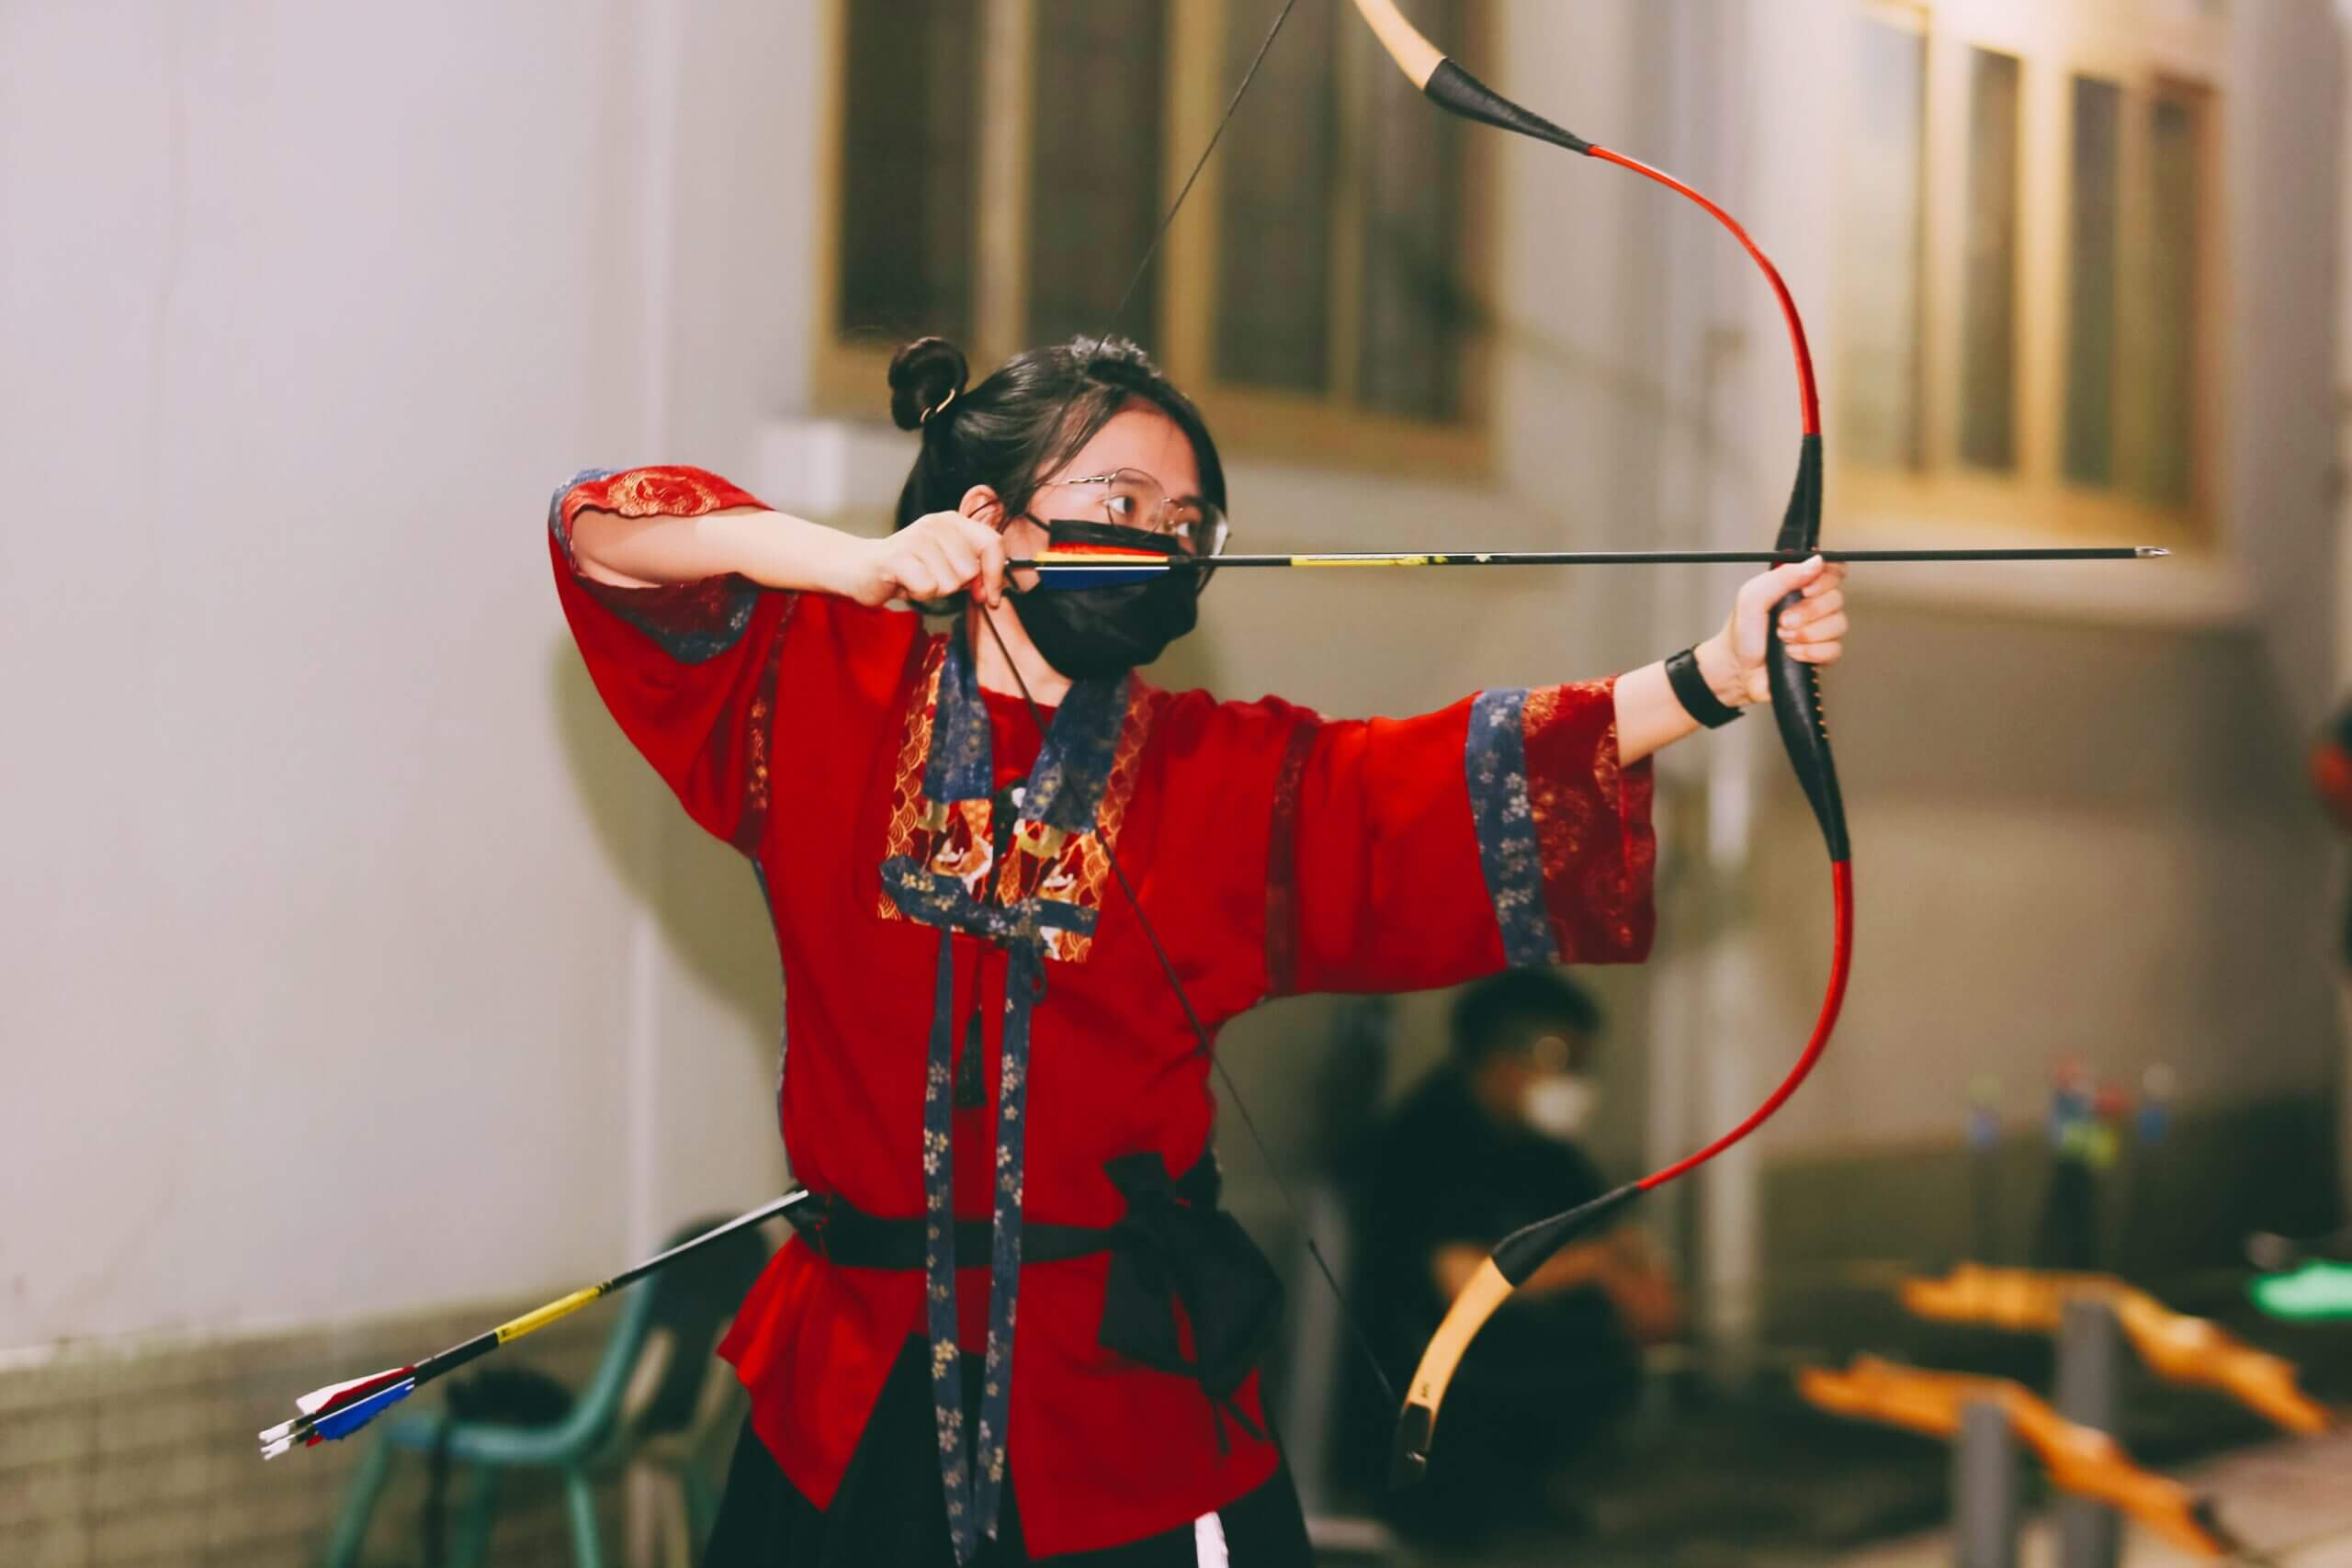 Trần Quan Brother Archery Club